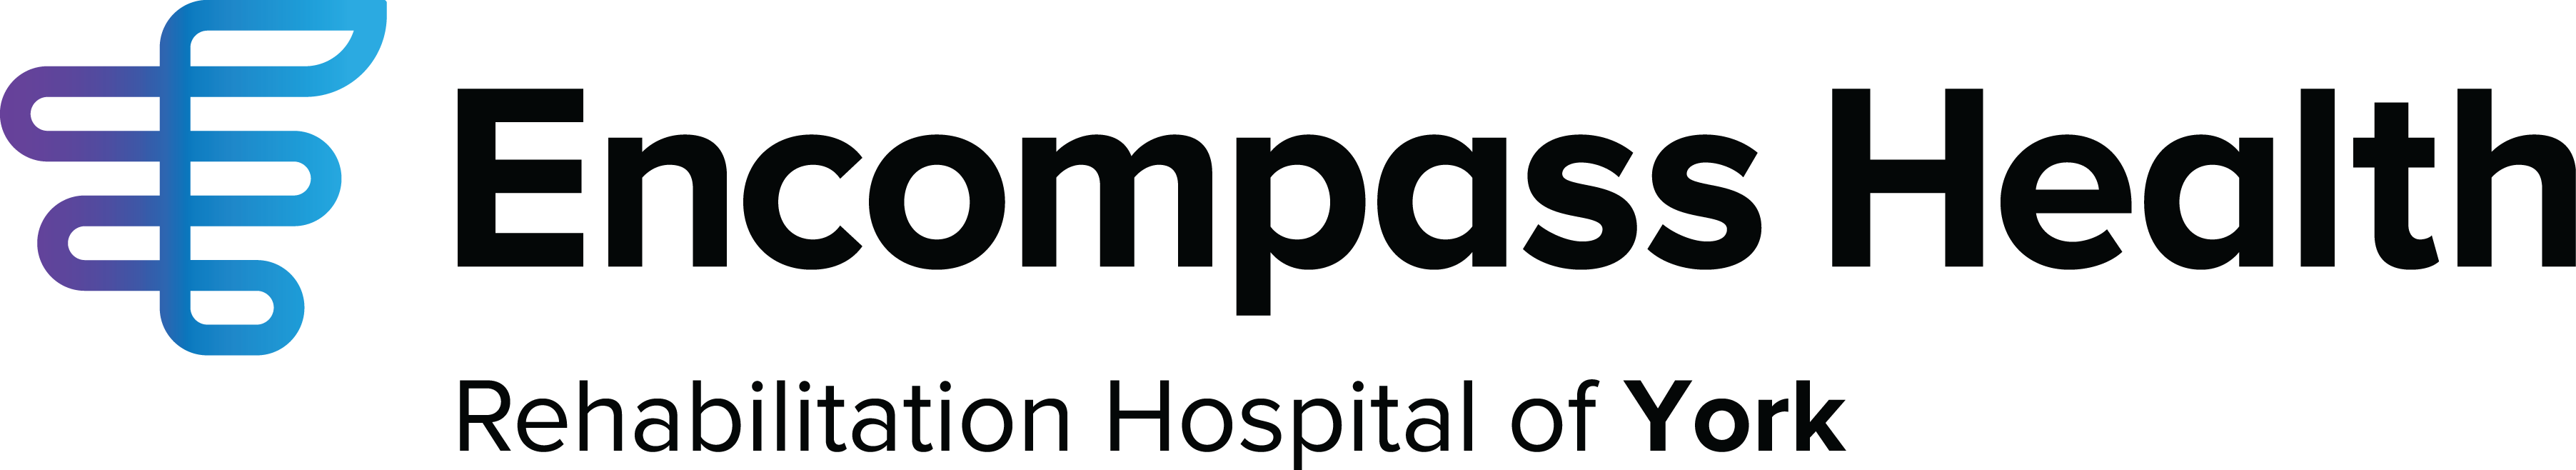 York Hospital Logo